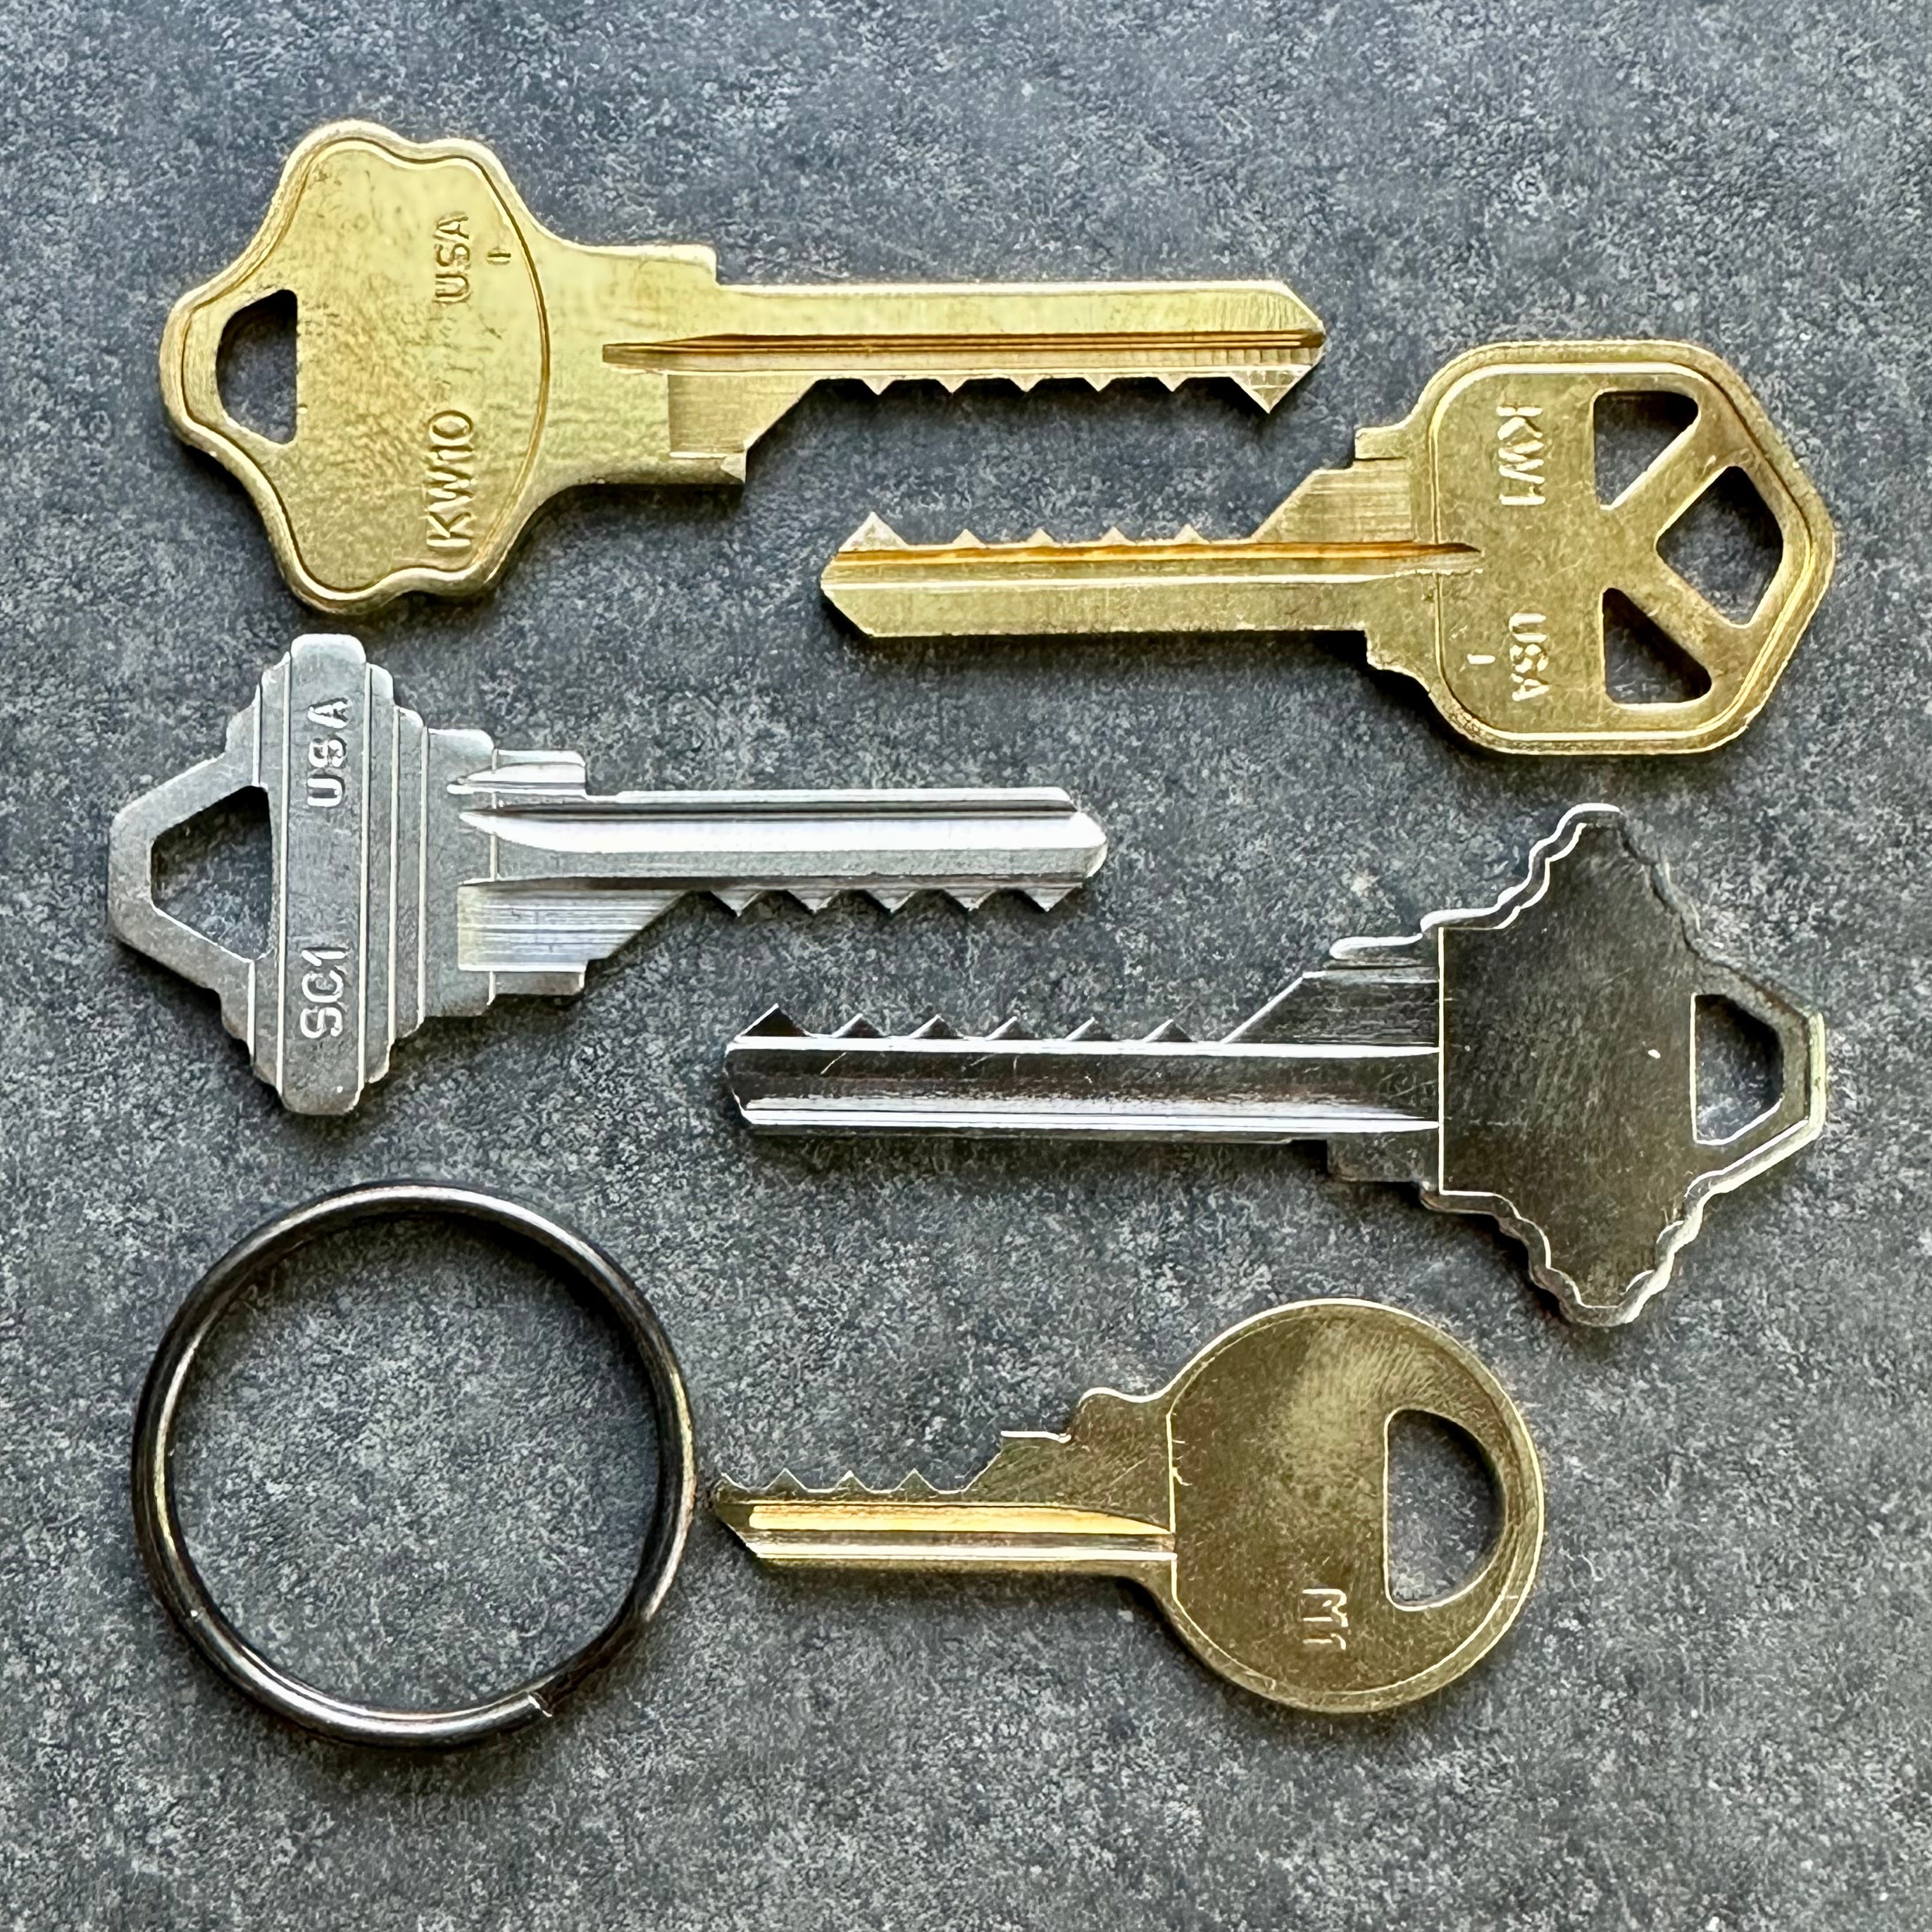 Rubber O-Ring for Bump Keys